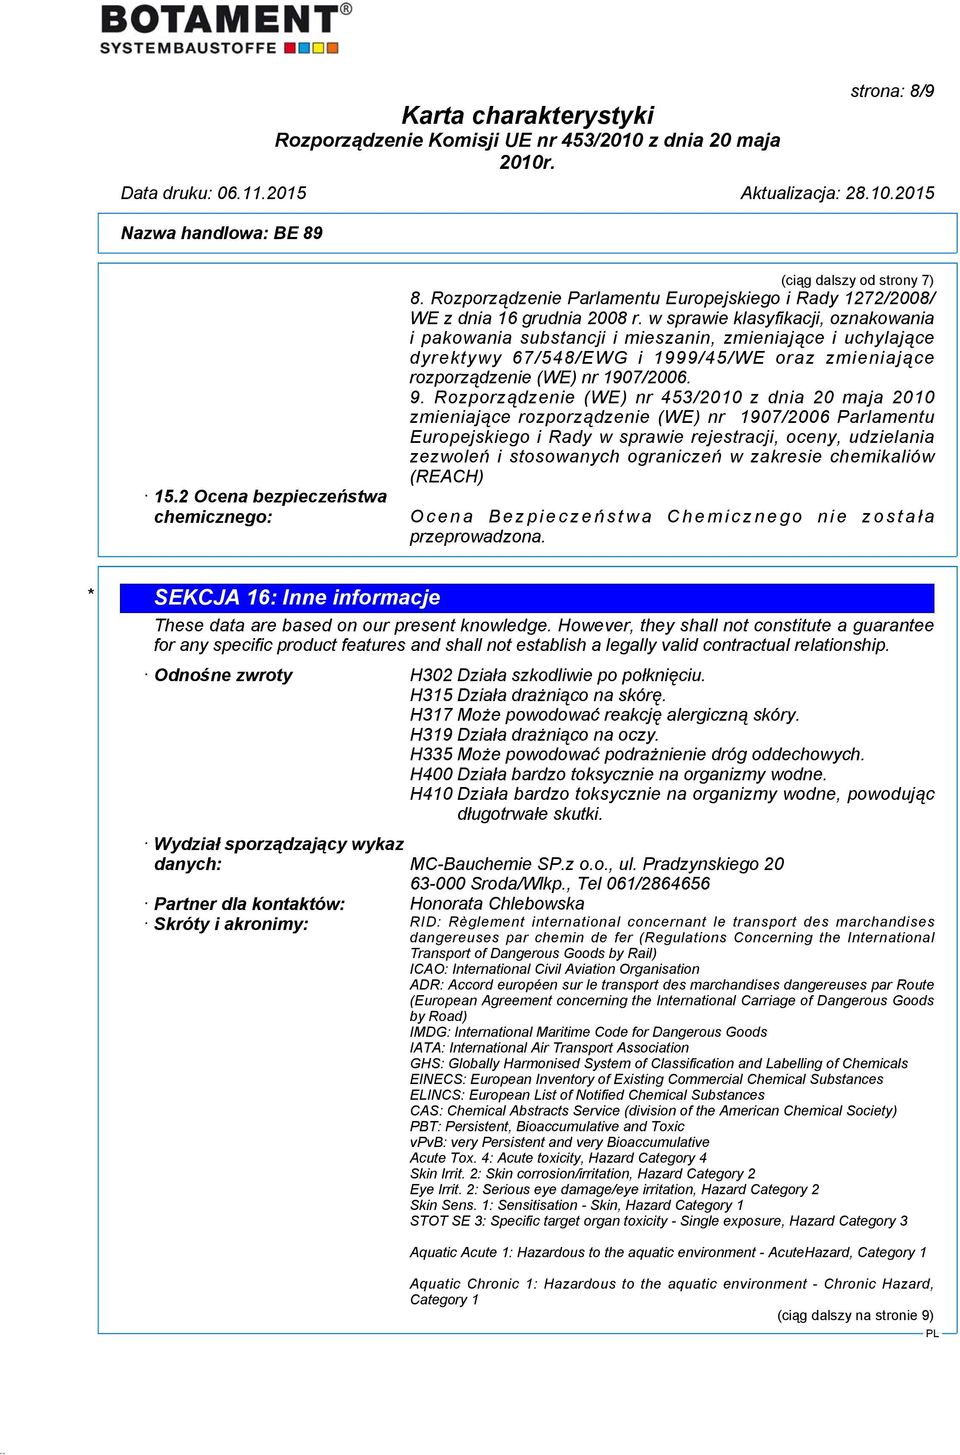 Rozporządzenie (WE) nr 453/2010 z dnia 20 maja 2010 zmieniające rozporządzenie (WE) nr 1907/2006 Parlamentu Europejskiego i Rady w sprawie rejestracji, oceny, udzielania zezwoleń i stosowanych